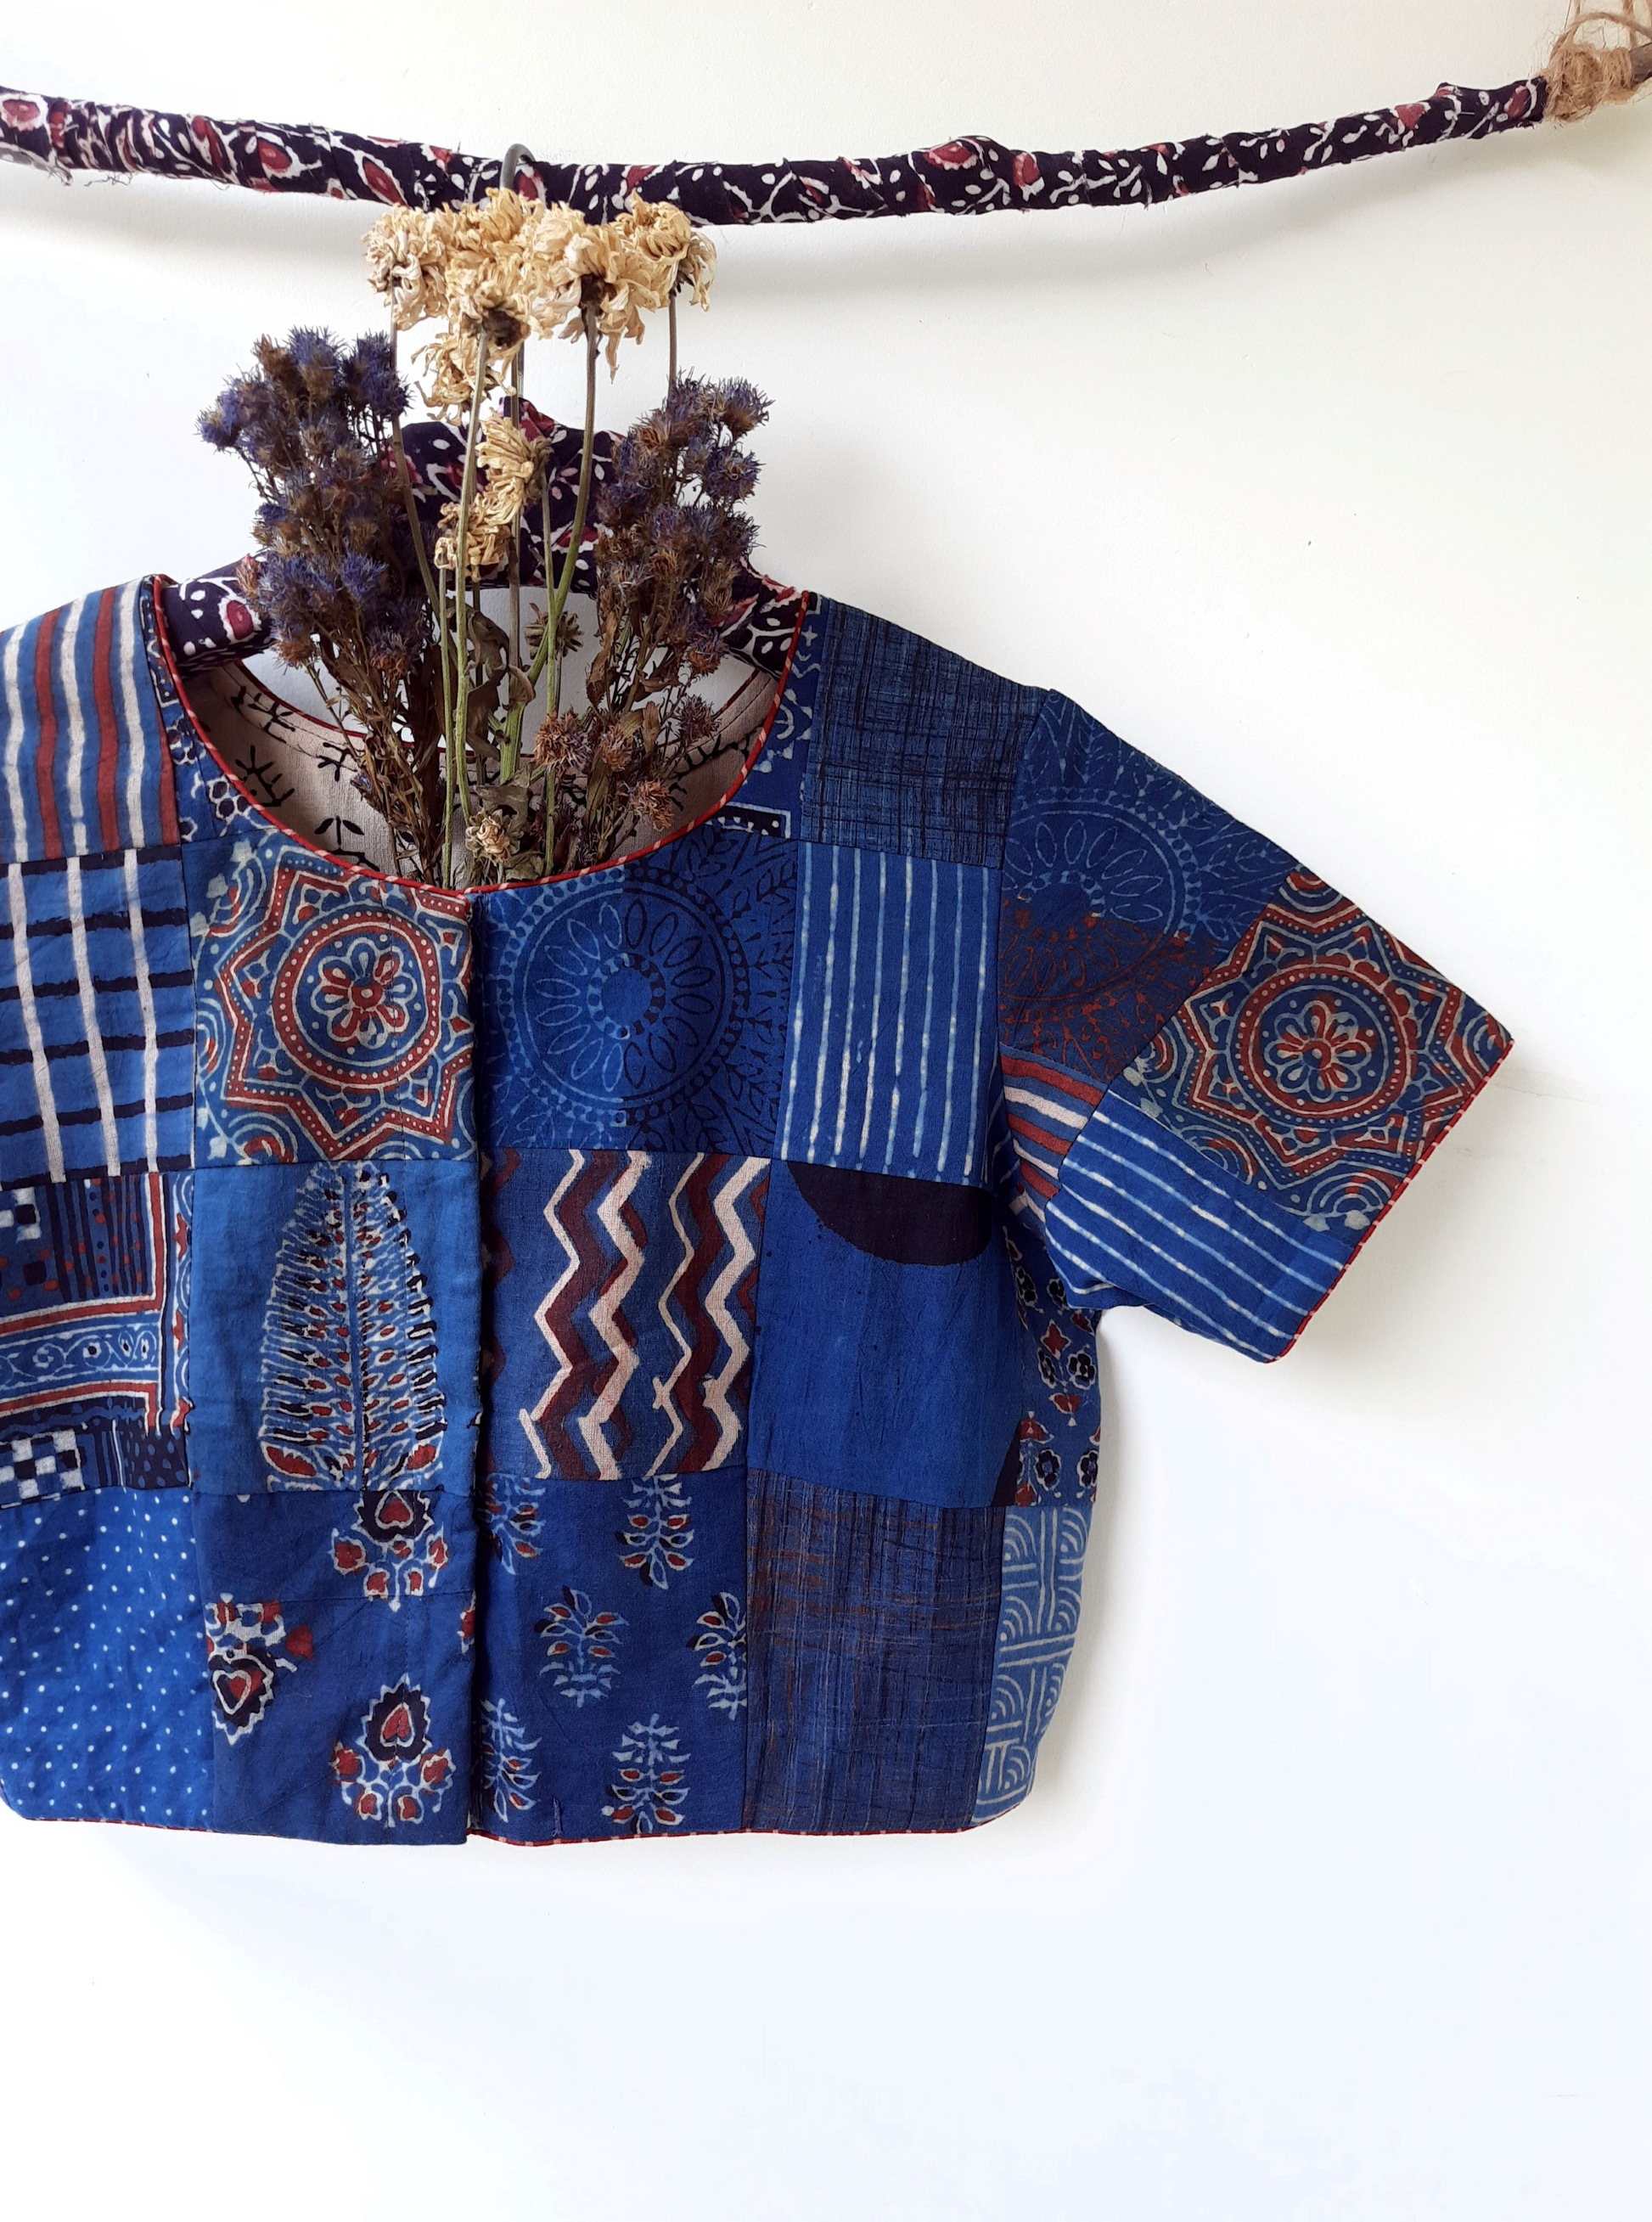 Indigo ajrakh patchwork blouse, Upcycled indigo blouse, Indigo dyed ajrakh prints patchwork blouse, Indigo saree blouse, Slow fashion